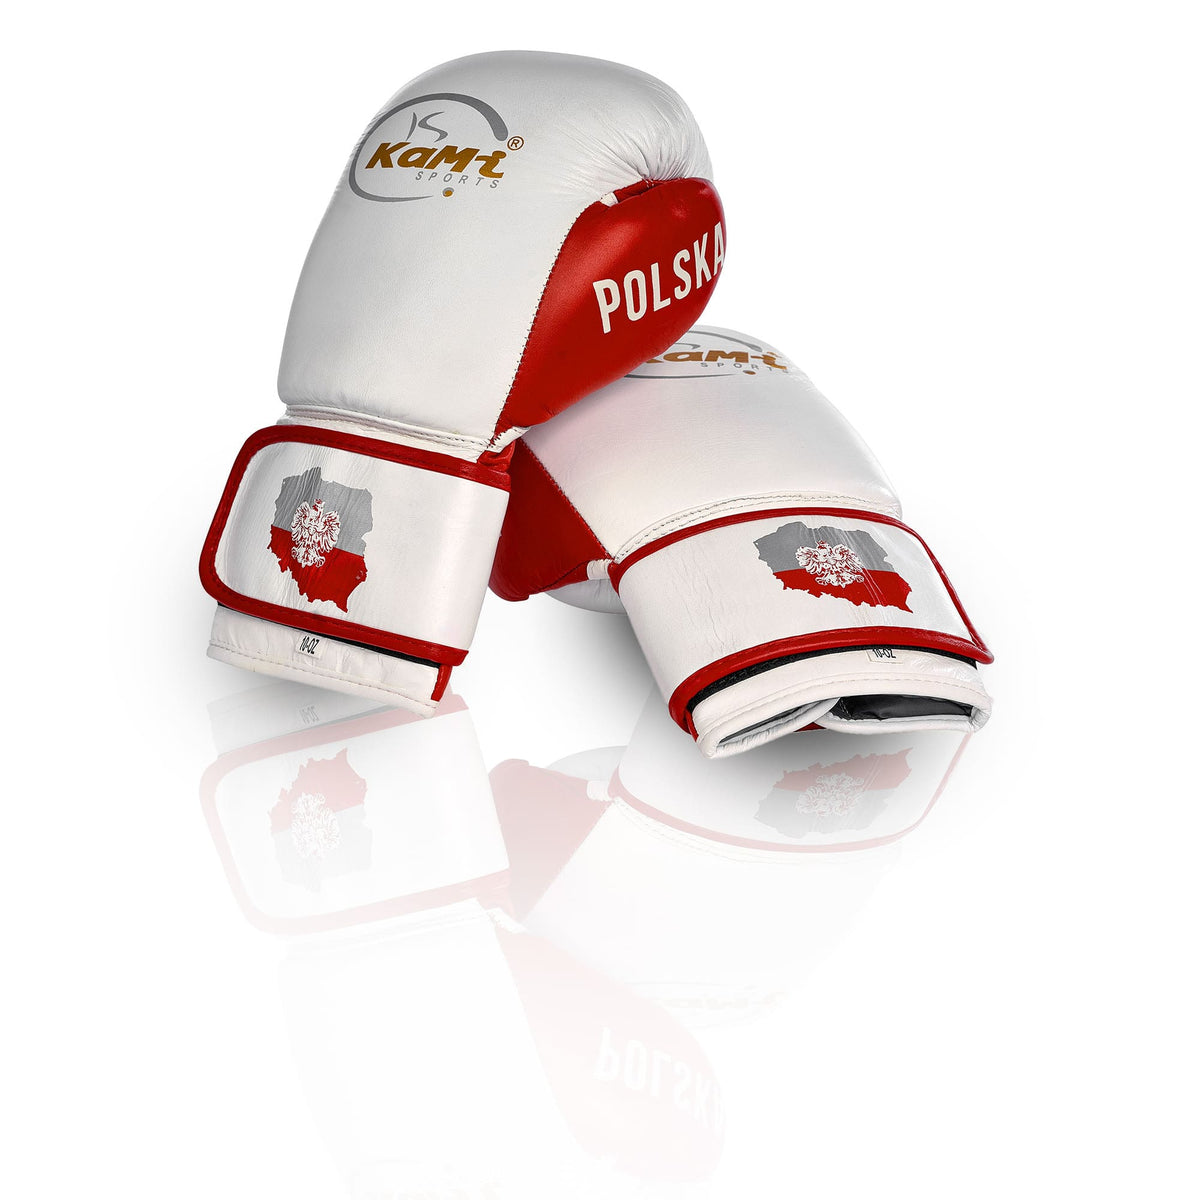 Premium Boxhandschuhe aus Echtleder mit polnischer Flagge, ideal für alle Altersgruppen, fortschrittlicher Schutz, elegantes Design